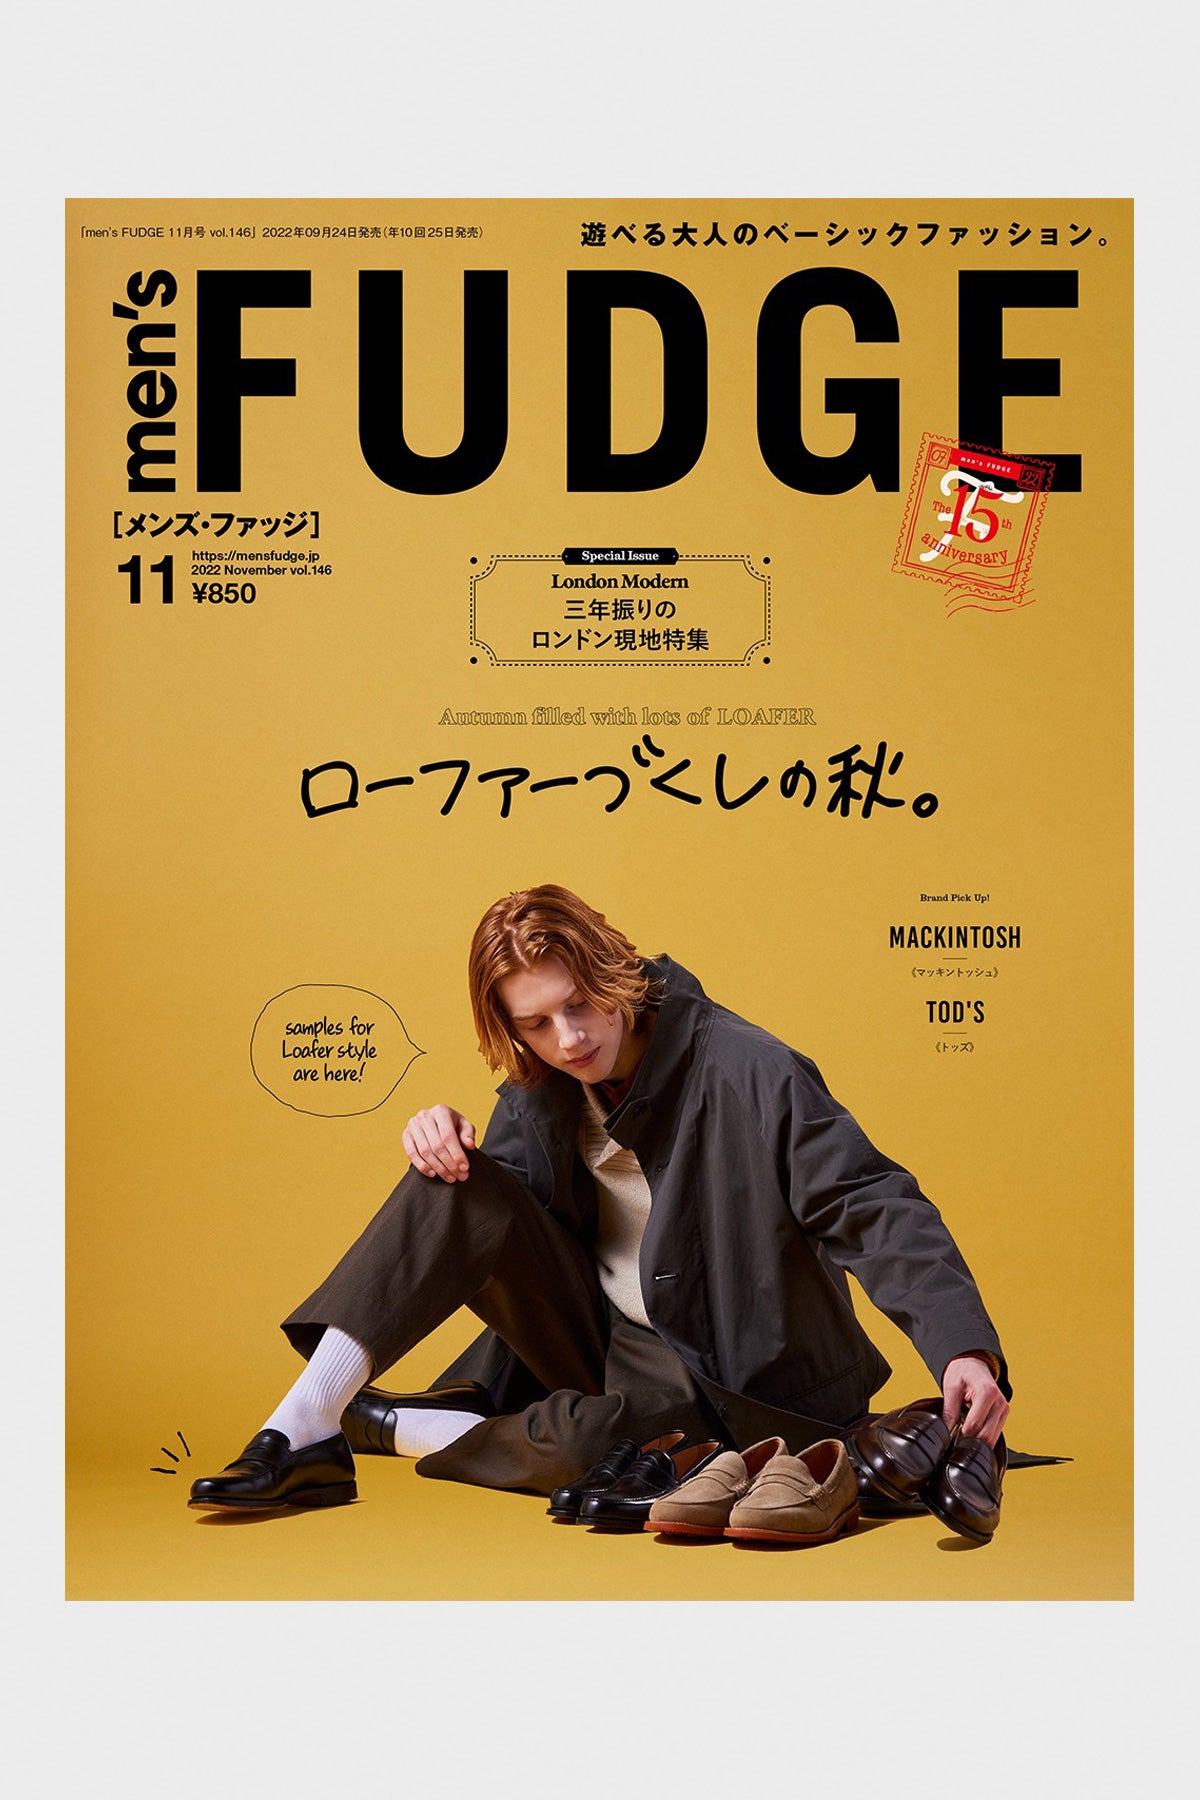 FUDGE Magazine - Men's FUDGE - Vol. 146 - Canoe Club